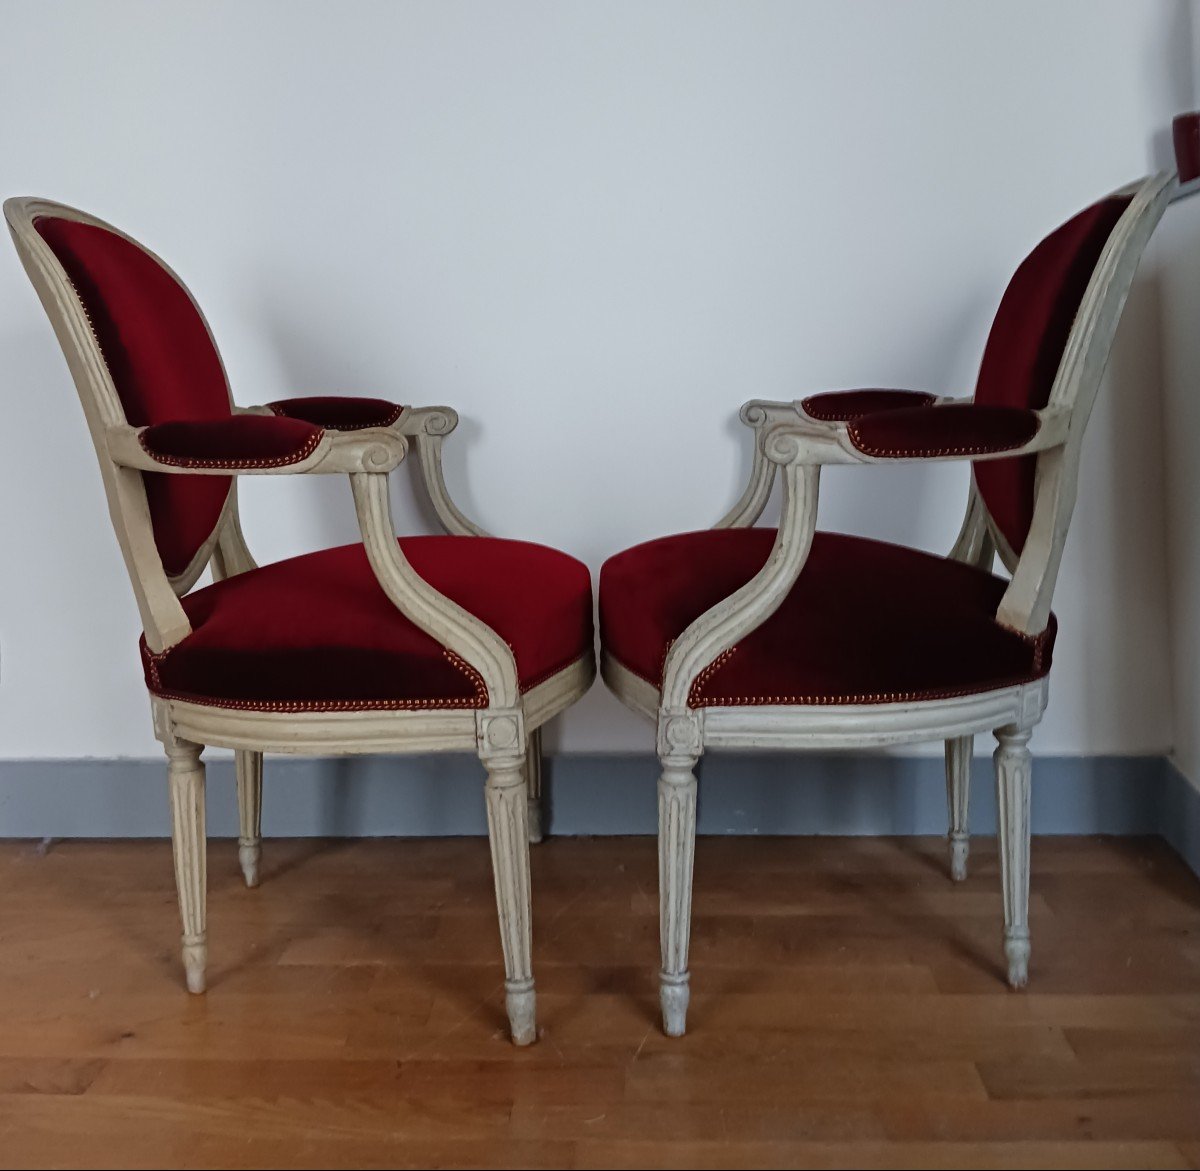 Claude Gorgu, maître en 1770 - paire de fauteuils en cabriolet - restaurés - velours jaspé - numéro d'inventaire-photo-4